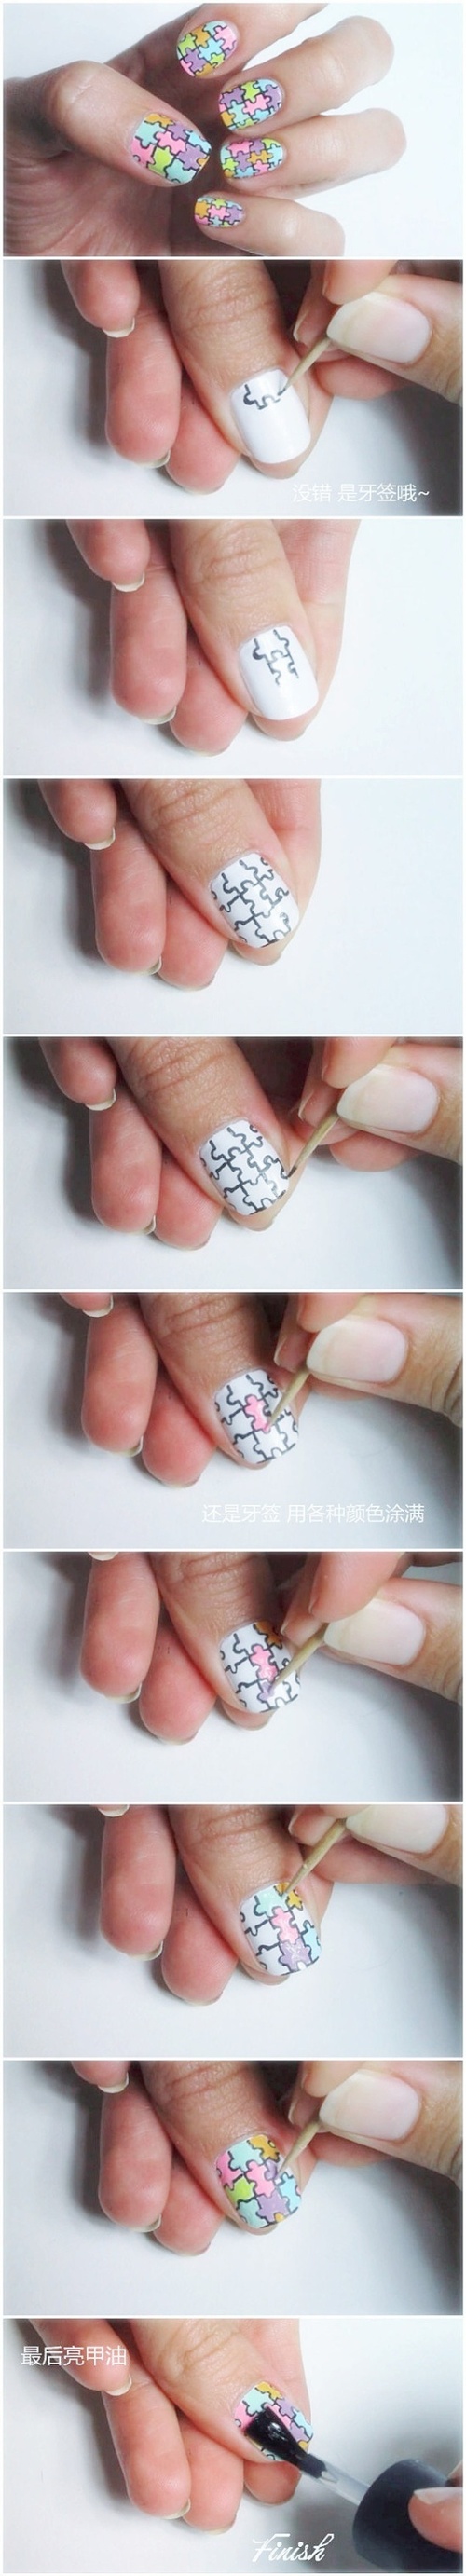 general-diy-nails-splendid-diy-colorful-puzzle-nail-art-tutorial-with-white-nails-color-base-diy-nail-art